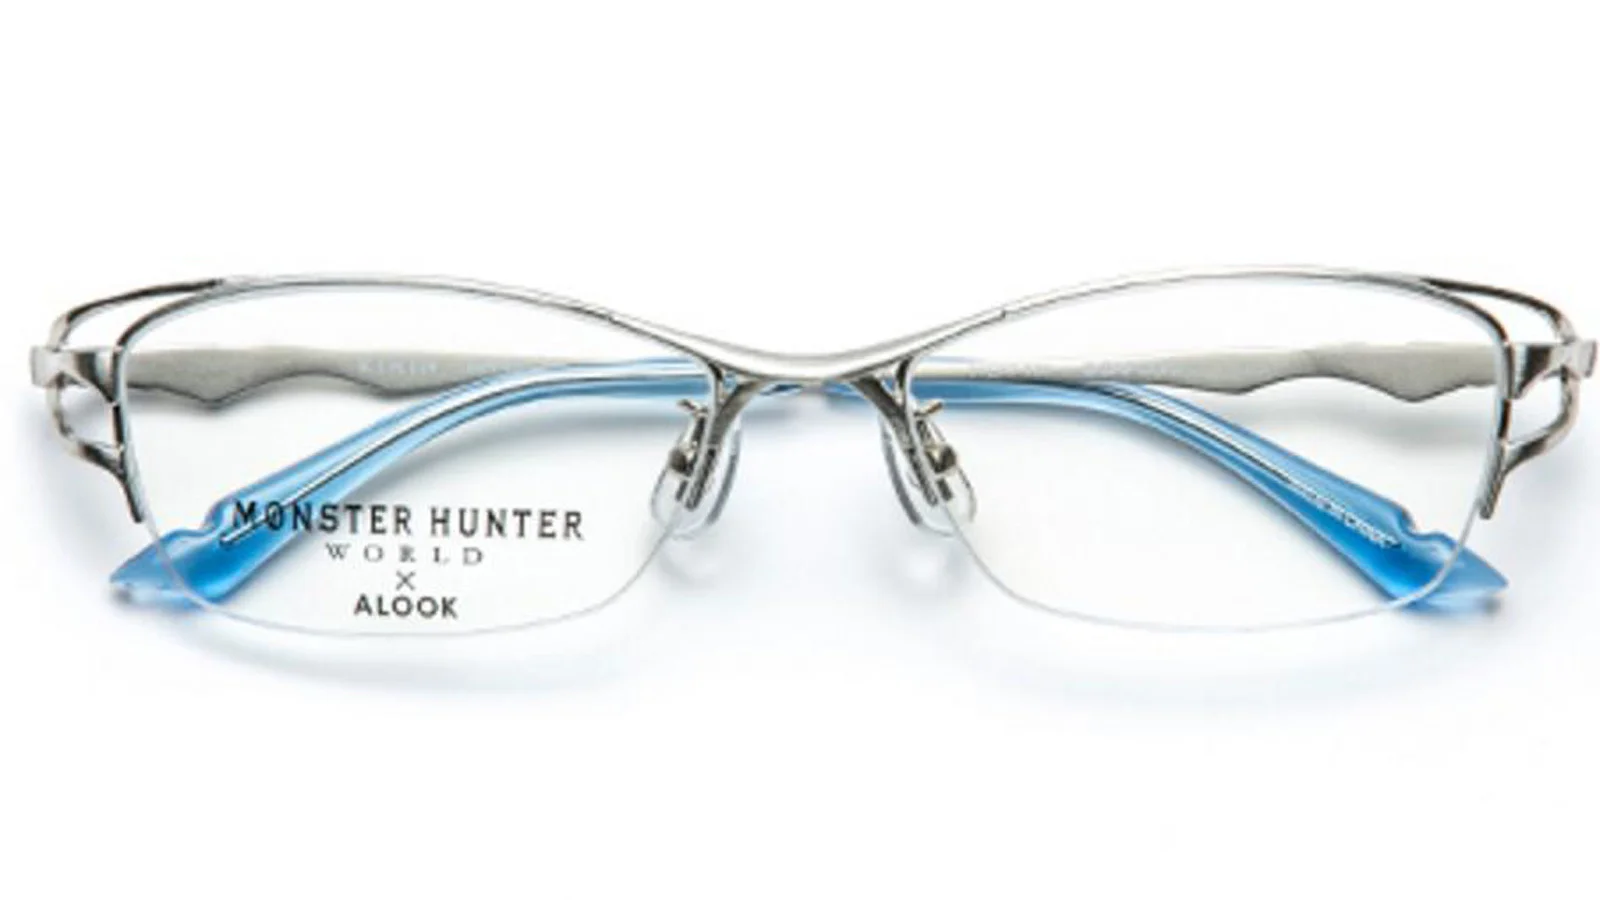 日本眼镜品牌ALOOK联名《怪物猎人 世界》推出主题眼镜